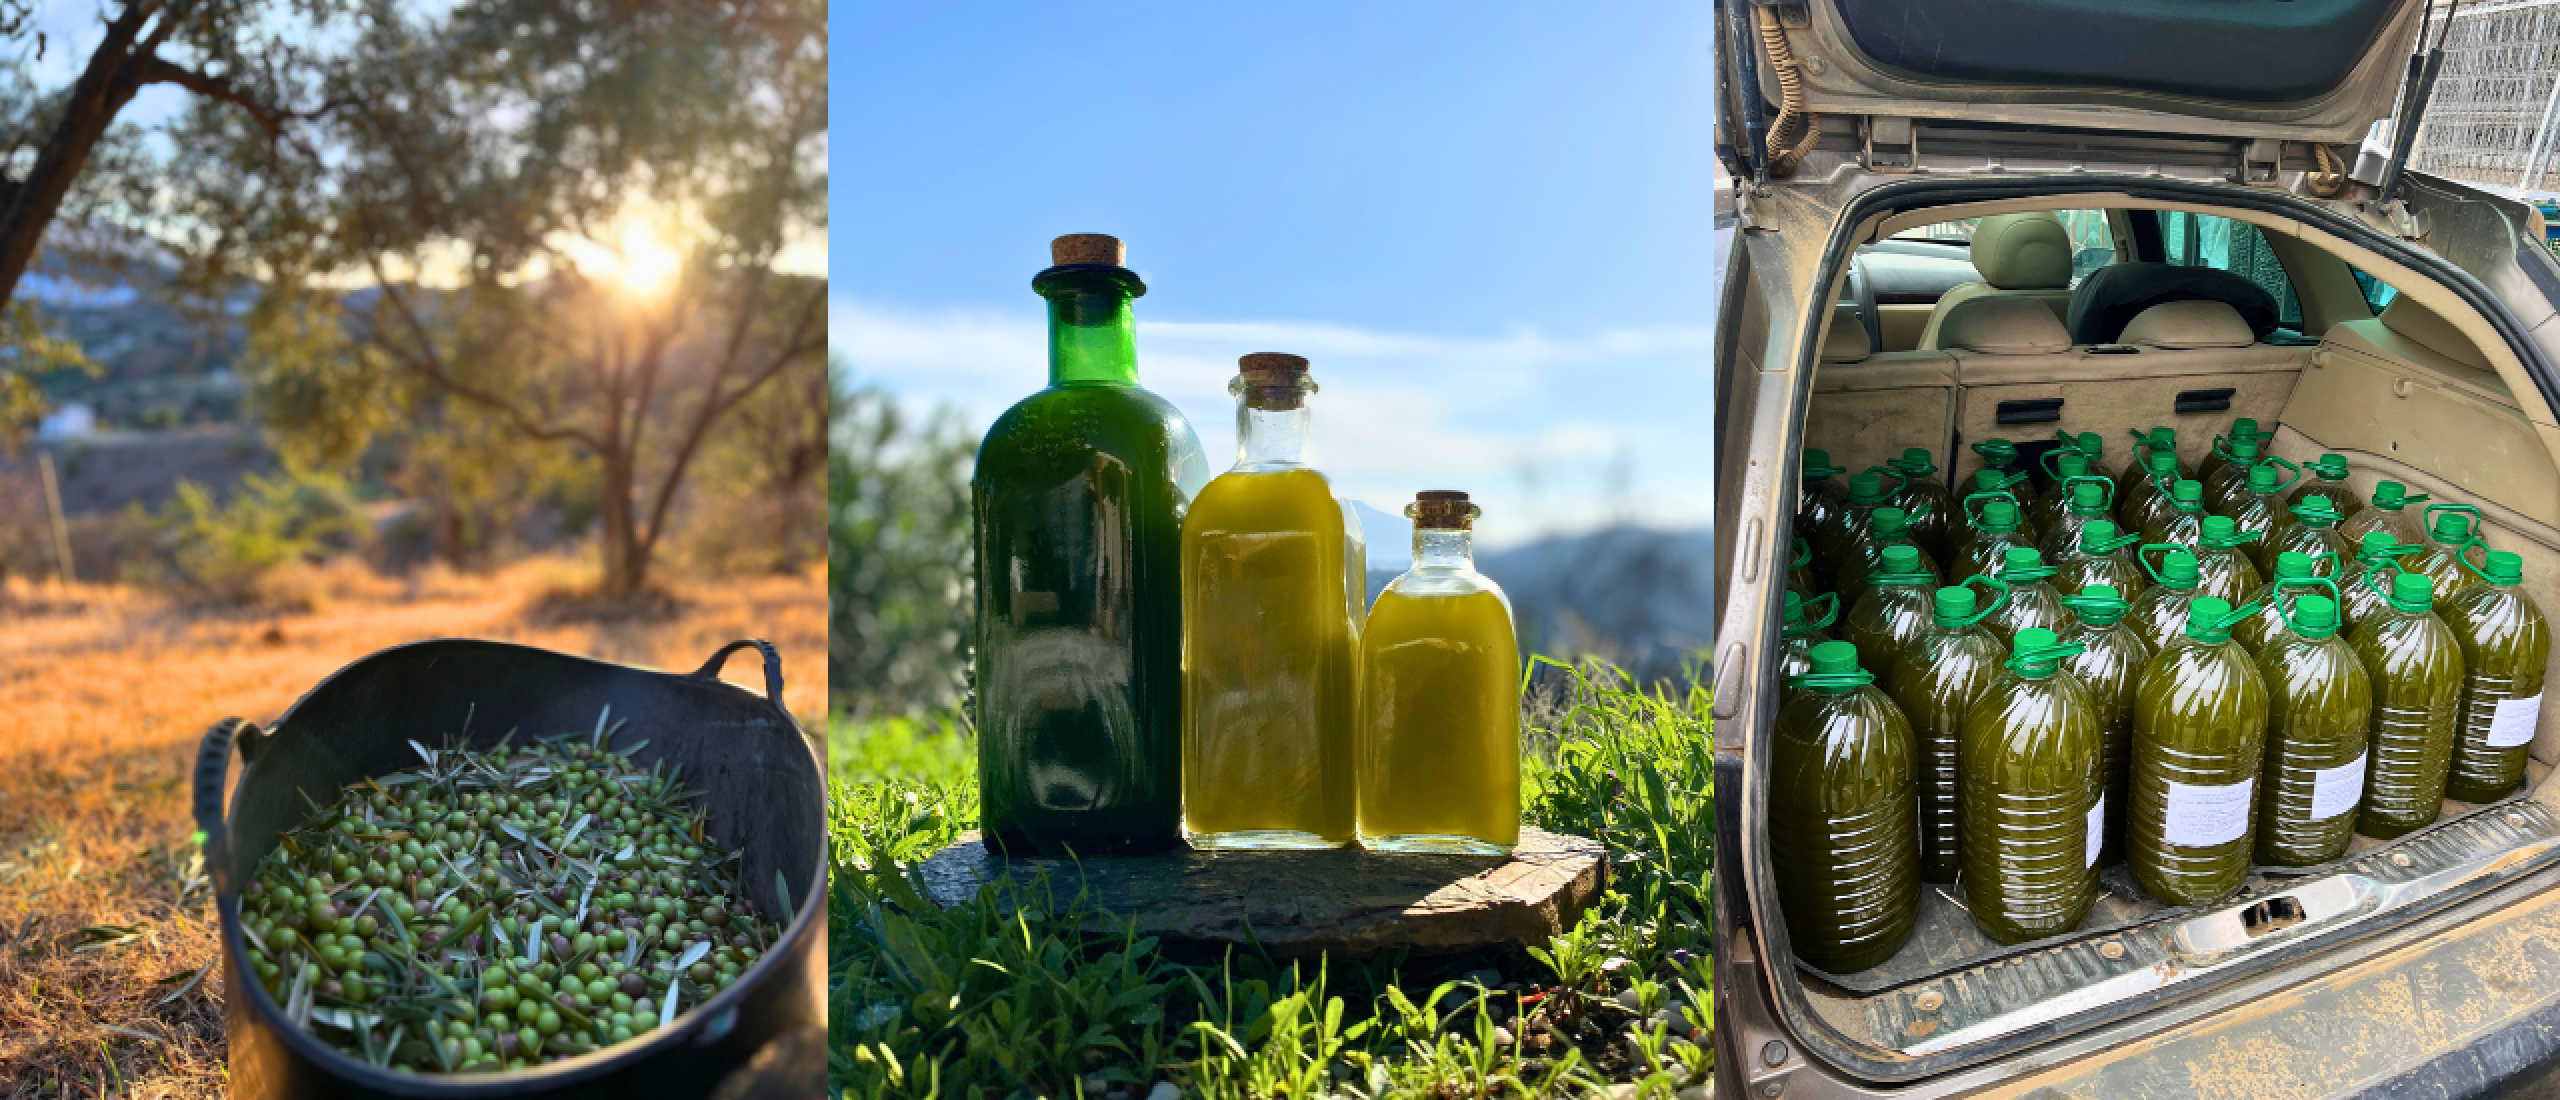 Bakken met olijfolie: 9 essentiële weetjes